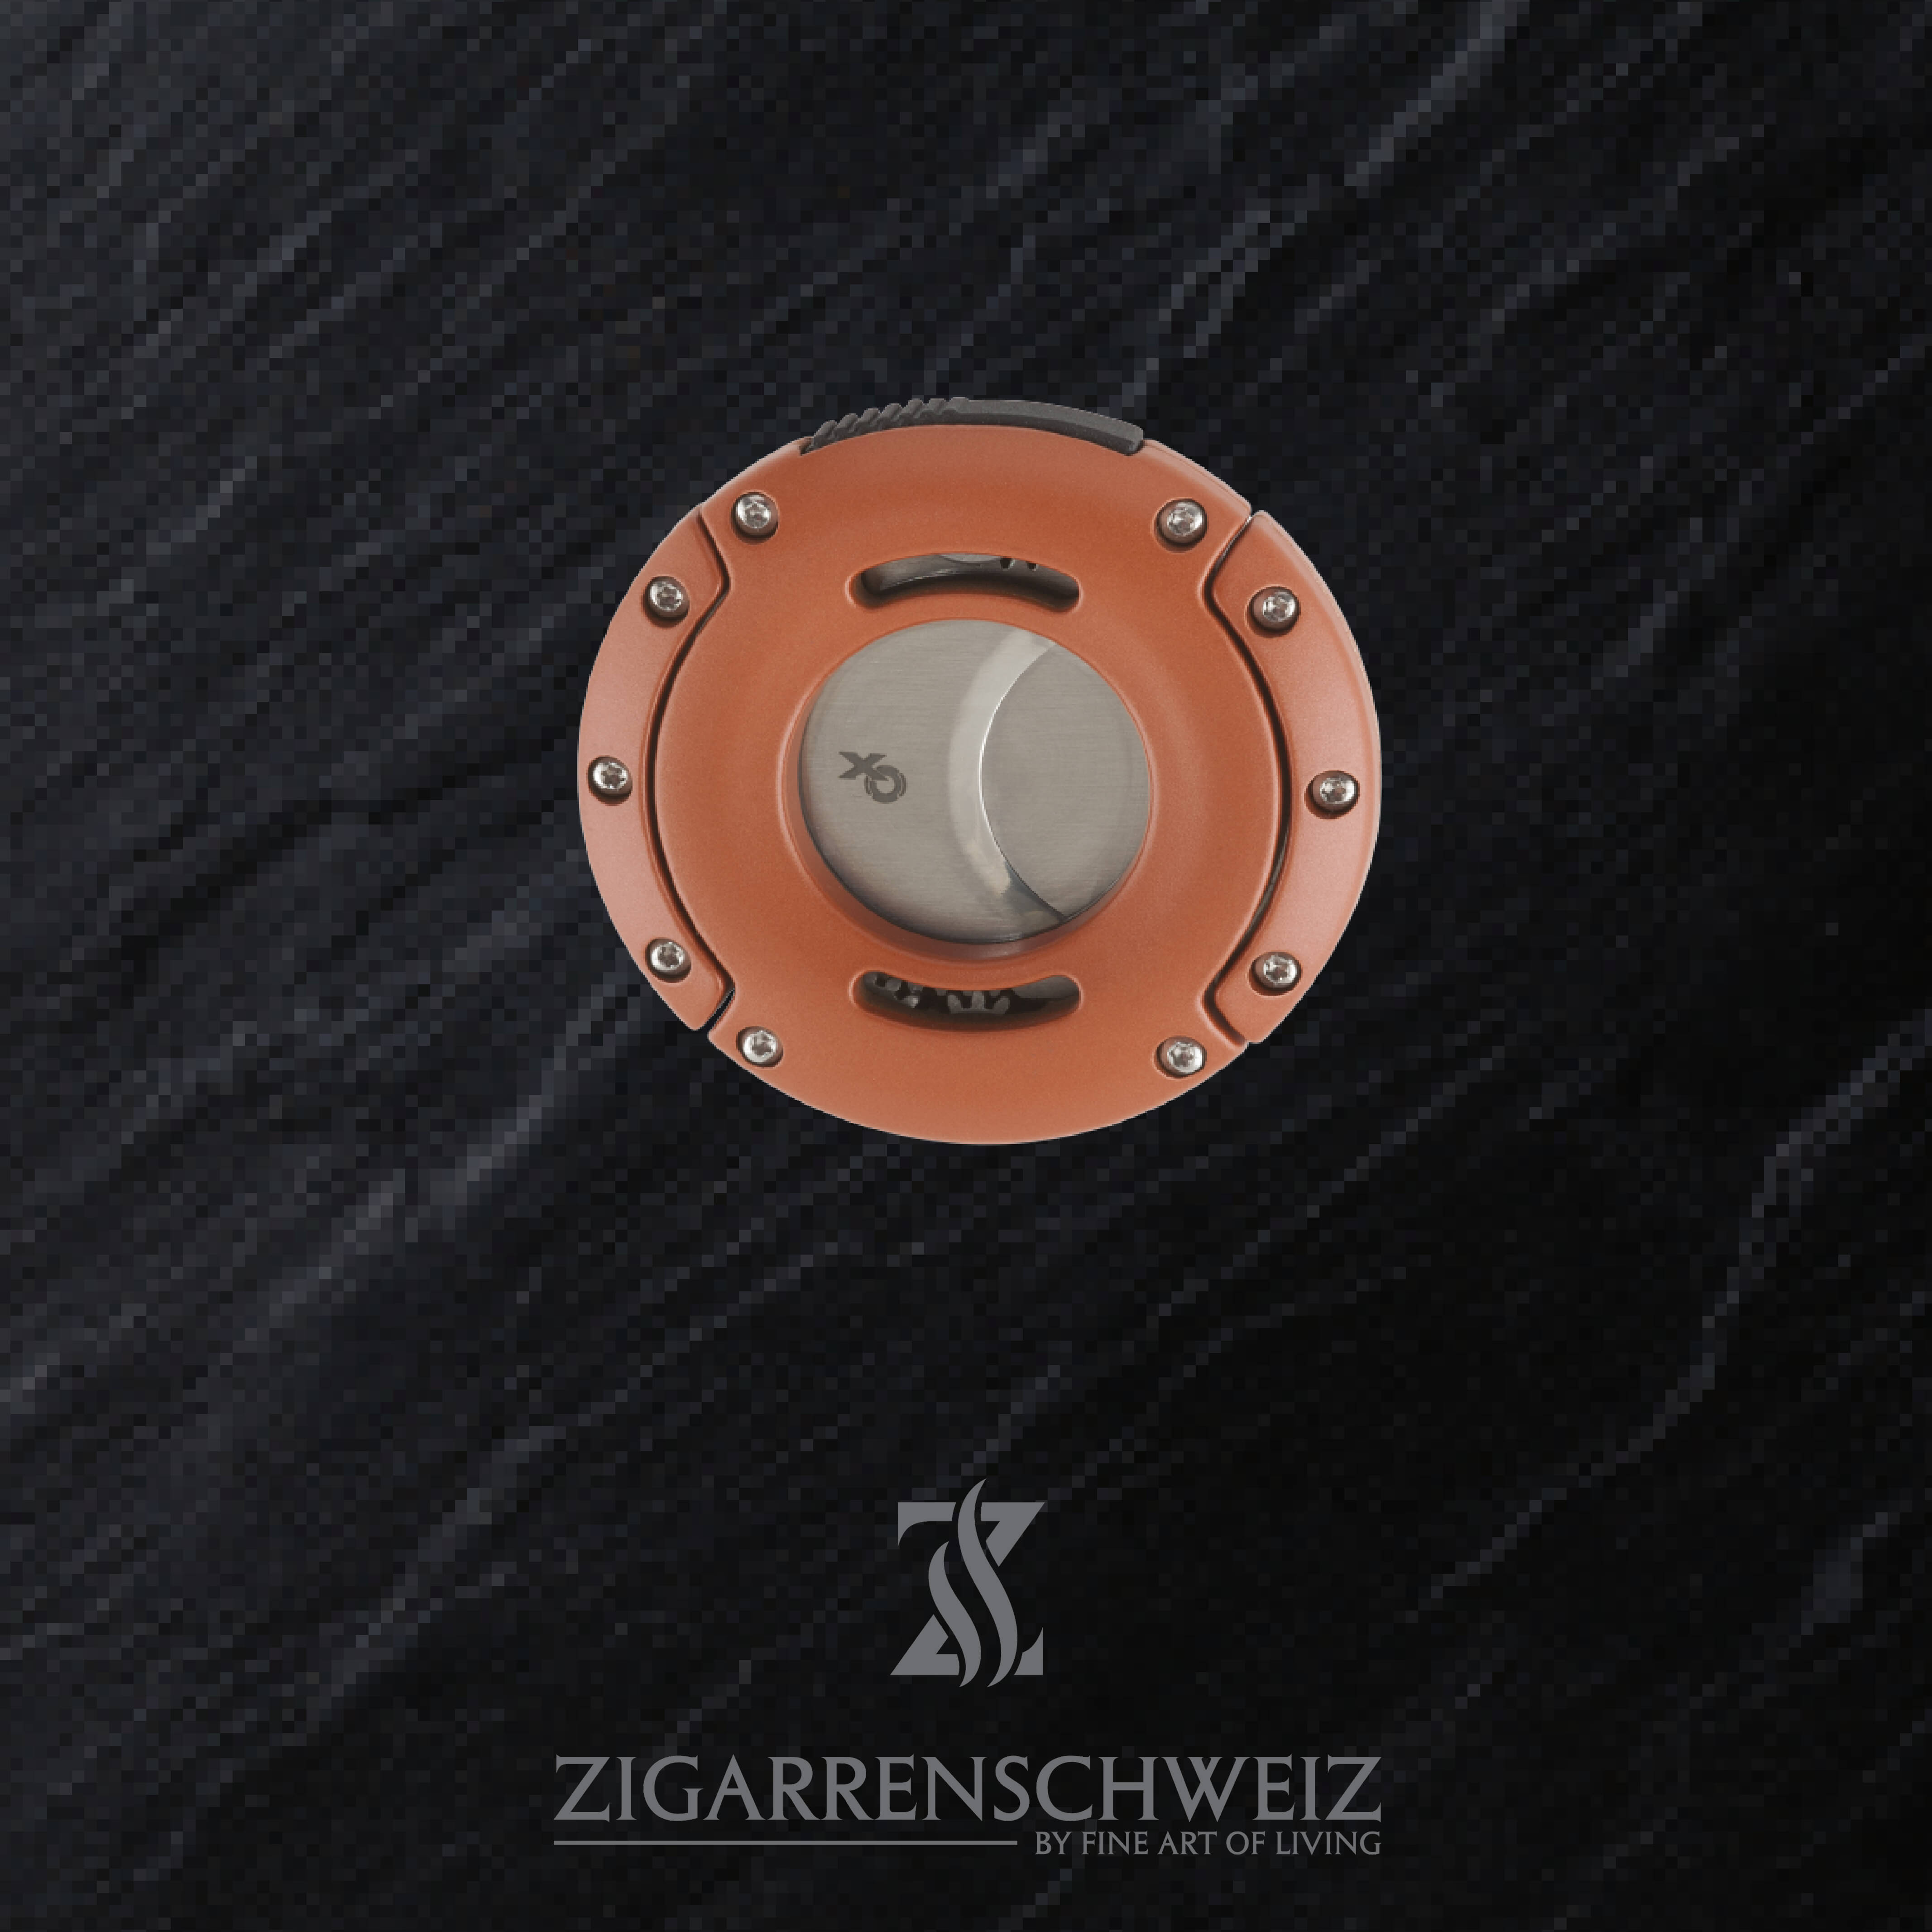 Xikar XO Zigarren Cutter, Farbe Gehäuse: Chopper Orange, Farbe Klingen: Silber, geschlossen